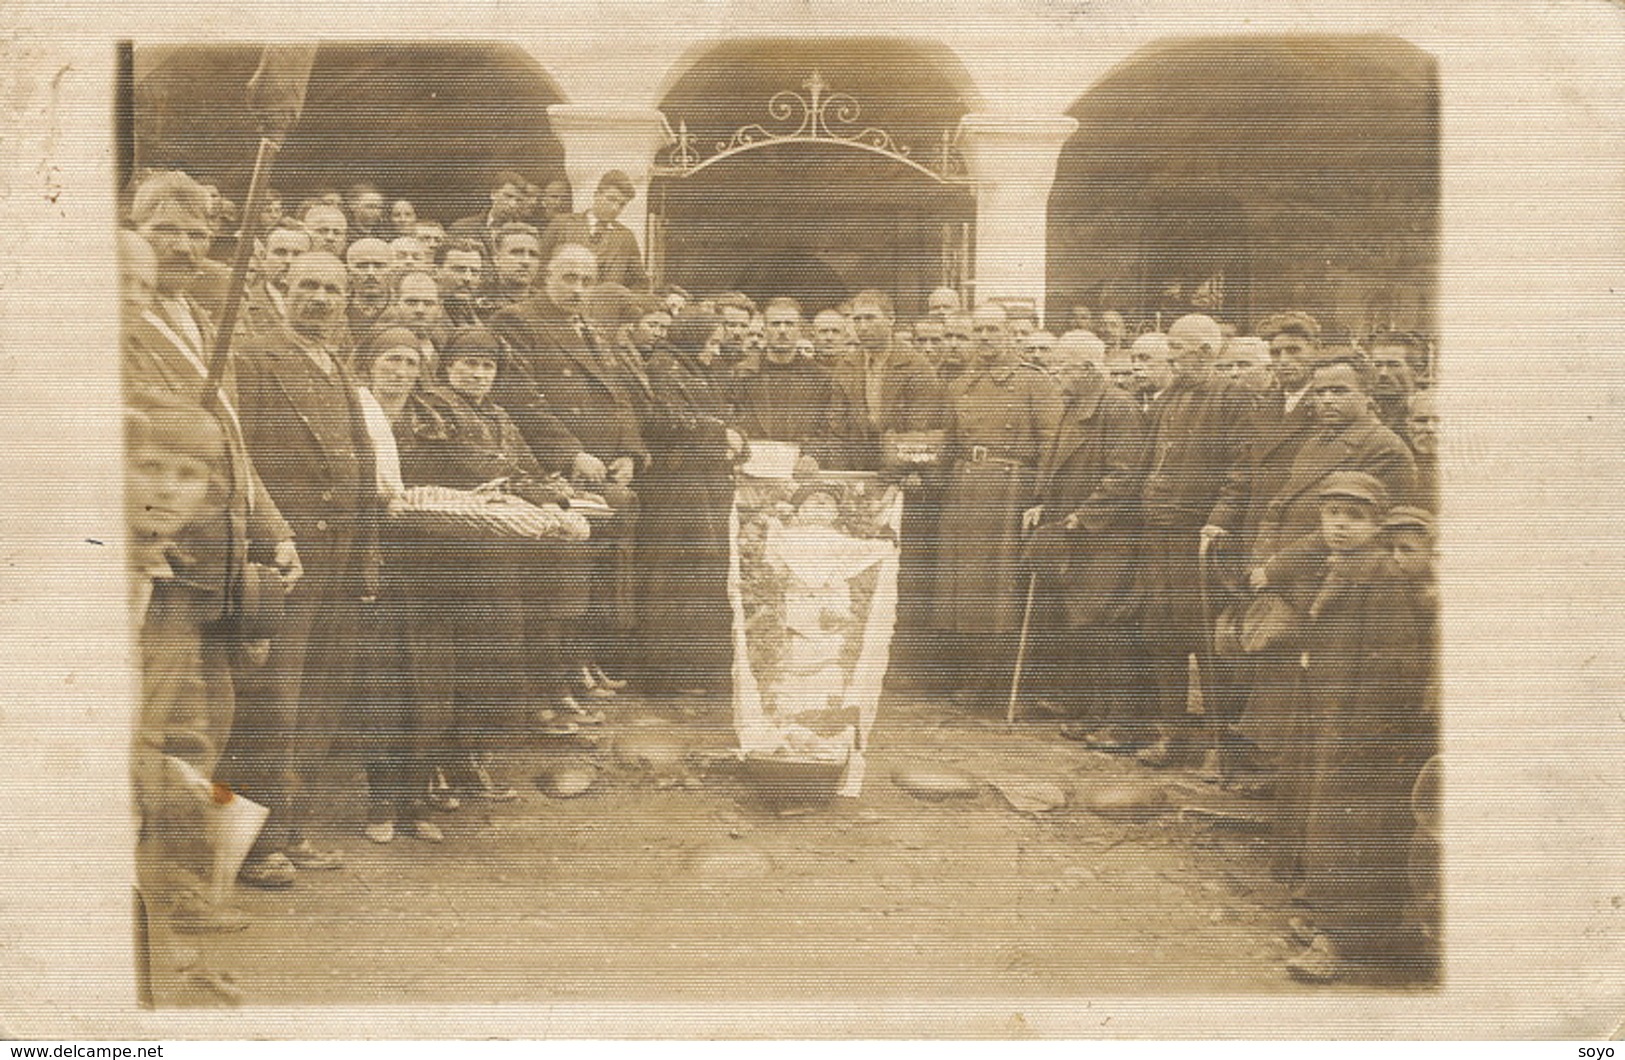 Real Photo  East Europe People Exhibiting An Open Coffin . Exhibition D' Un Mort - Beerdigungen